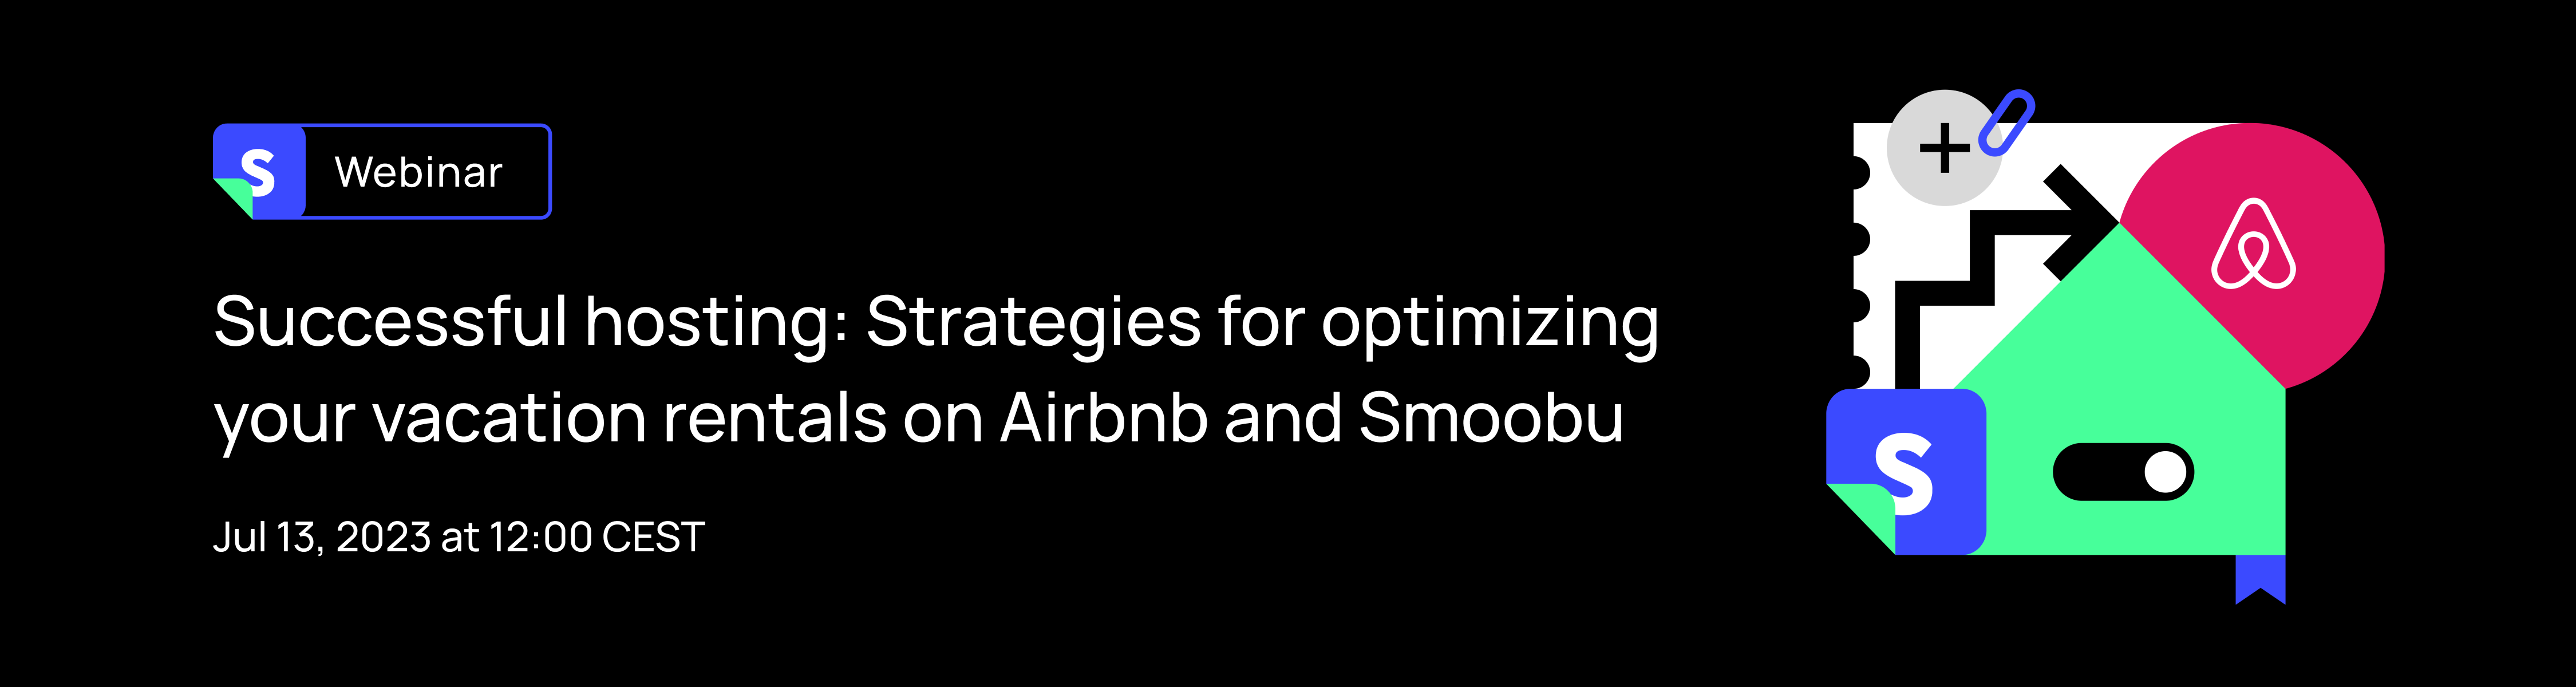 Webinar: strategie per ottimizzare i tuoi annunci su Airbnb e Smoobu